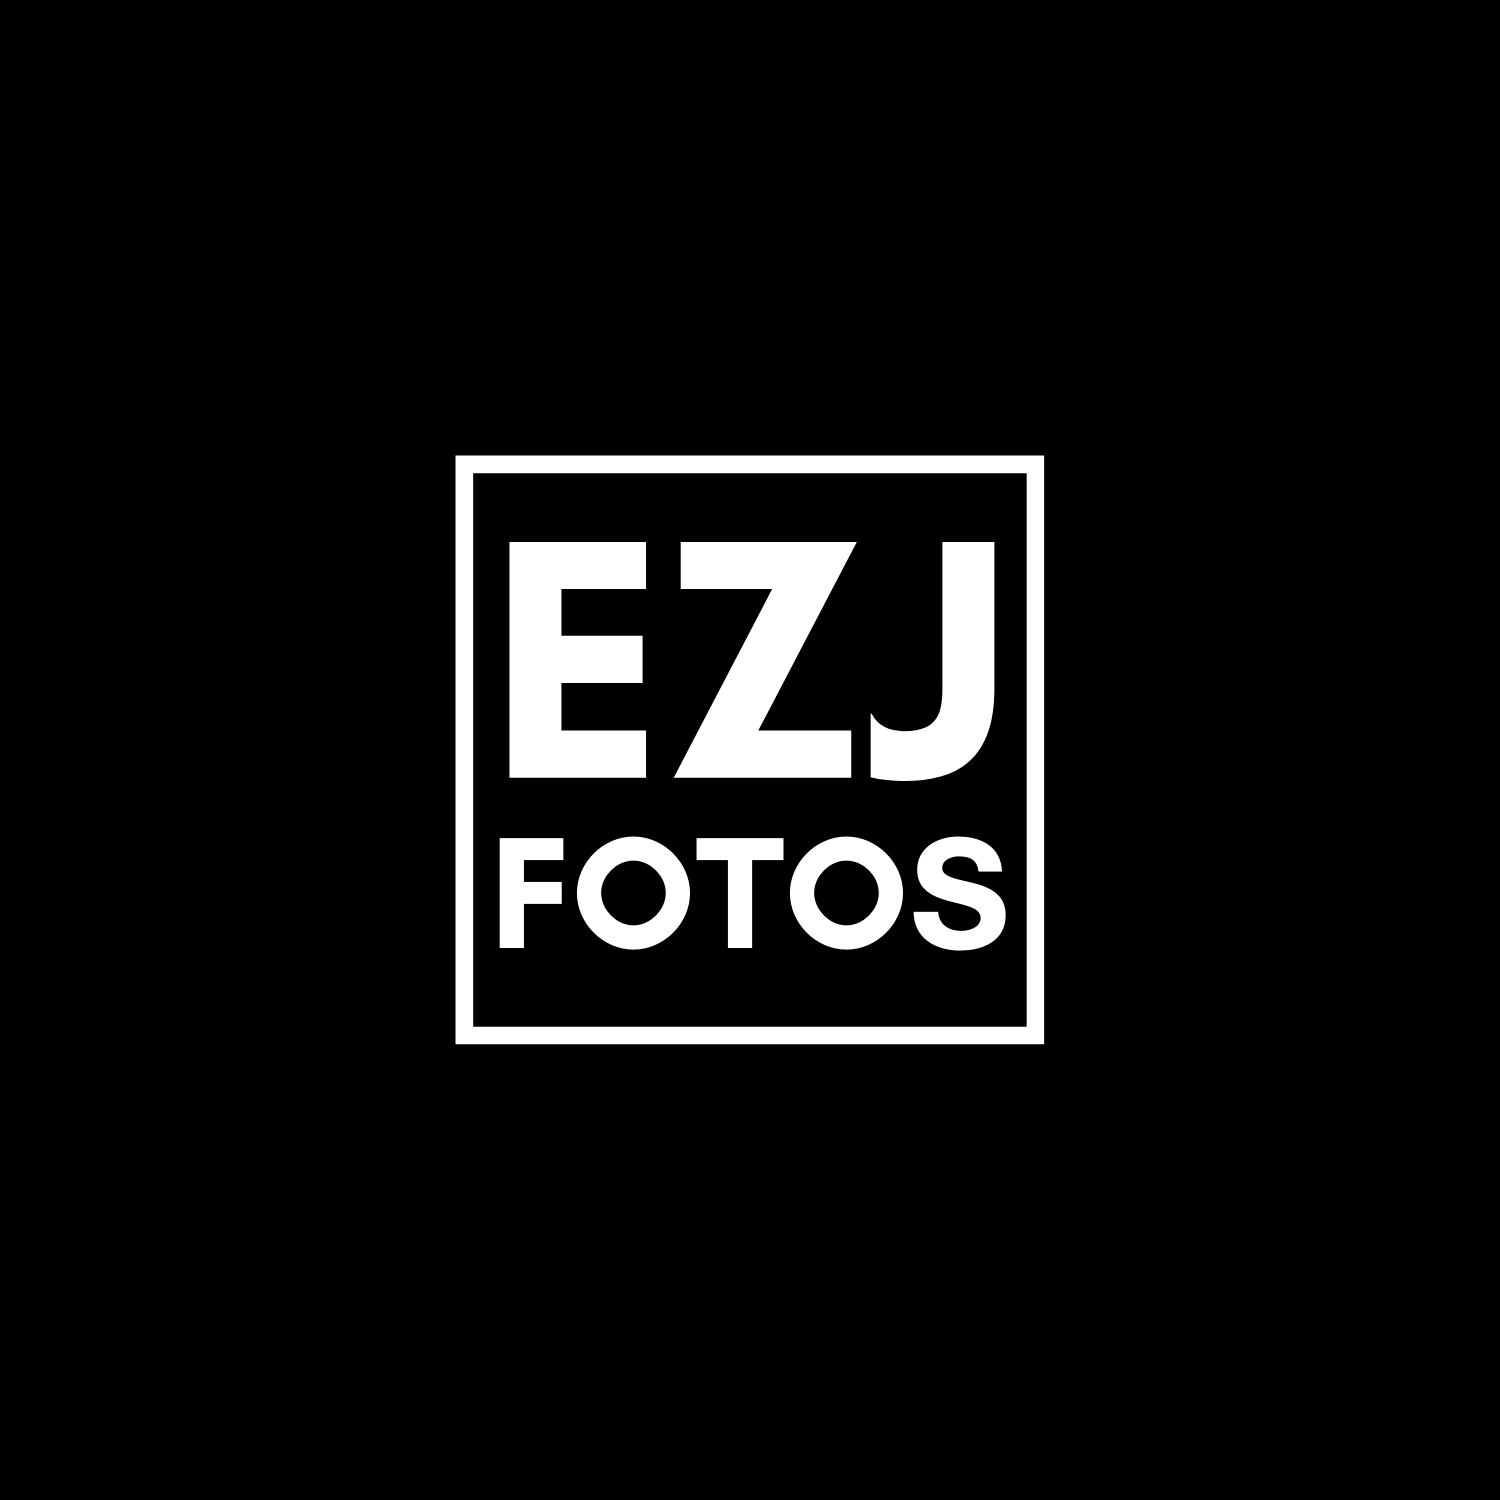 EZJ FOTOS ESTUDIO DE FOTOGRAFÍA PROFESIONAL, BOUTIQUE Y MAQUILLAJE